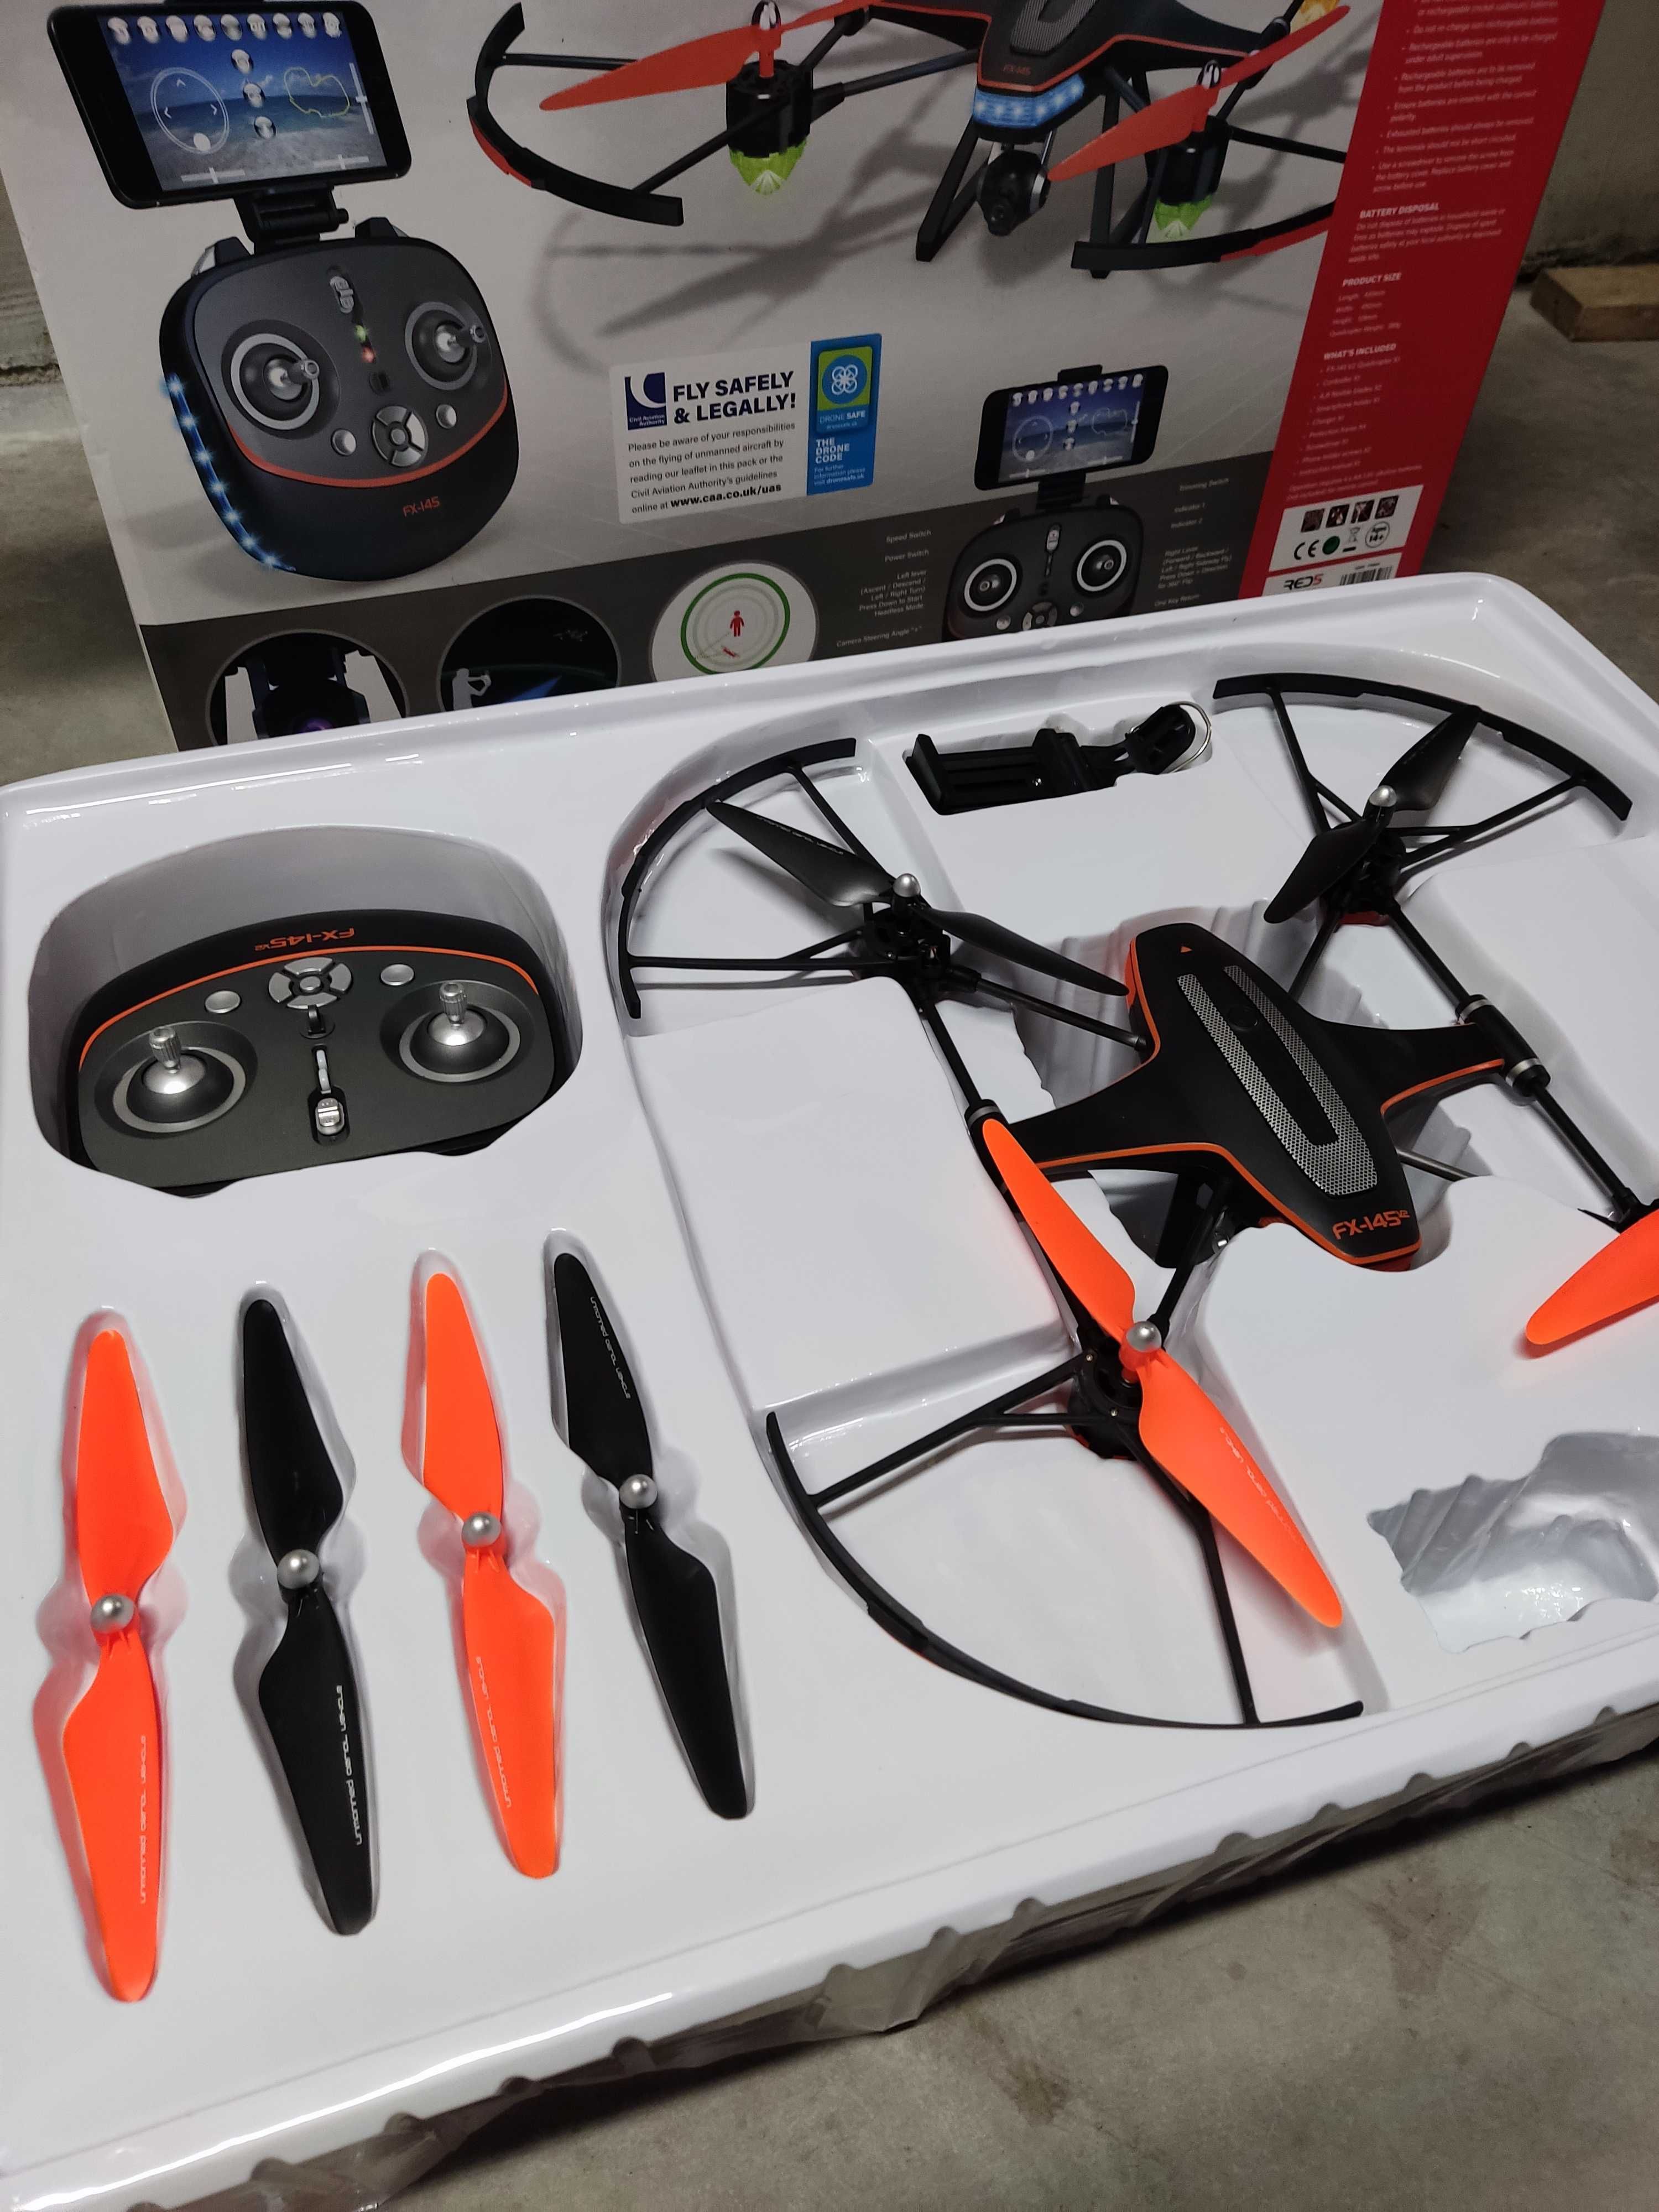 Dron RED5 FX-145 V2 quadcopter 720p HD Camera